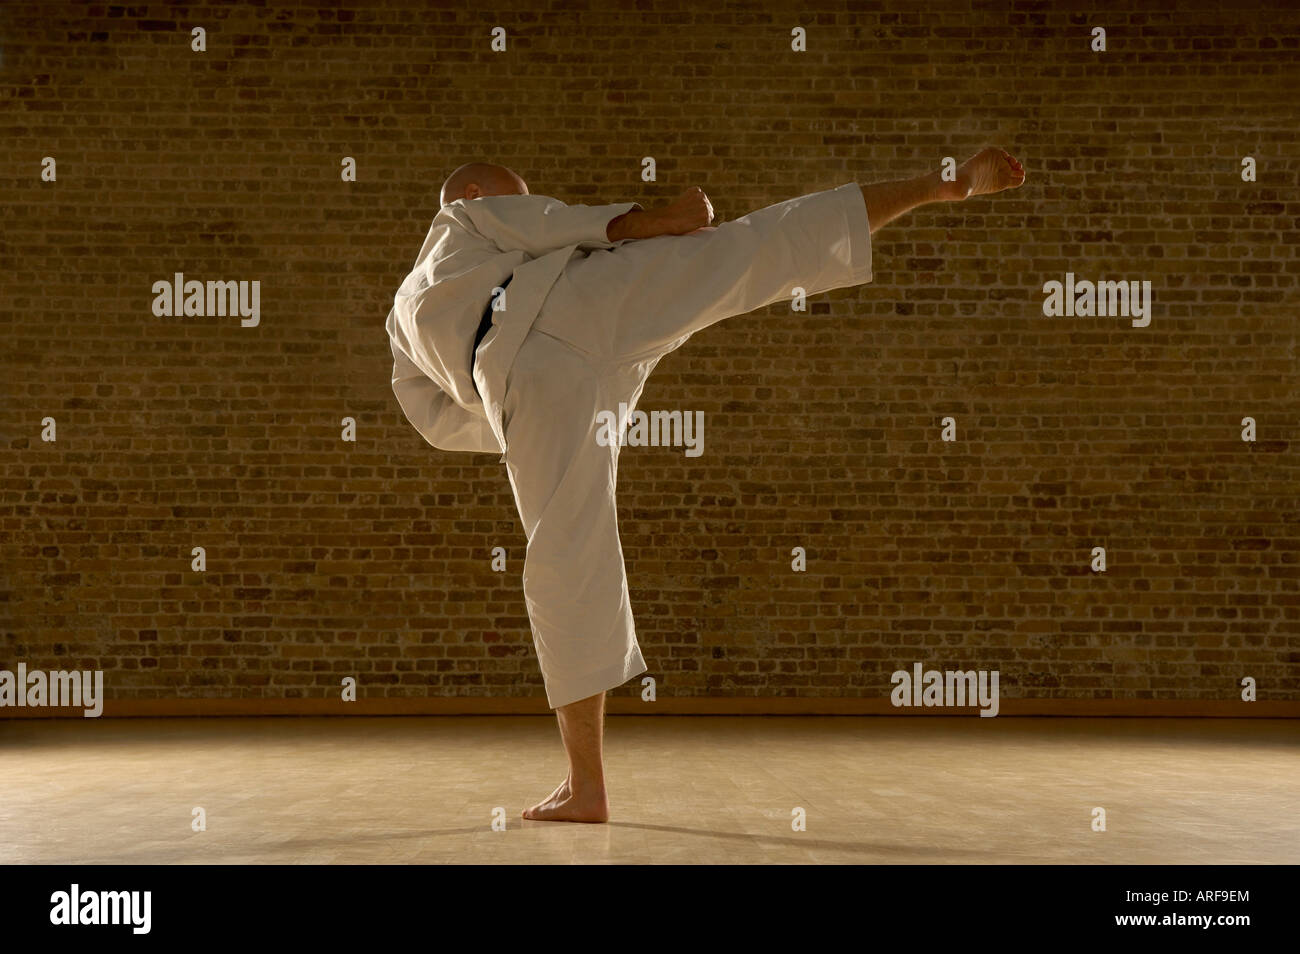 Karate man kicking Stock Photo